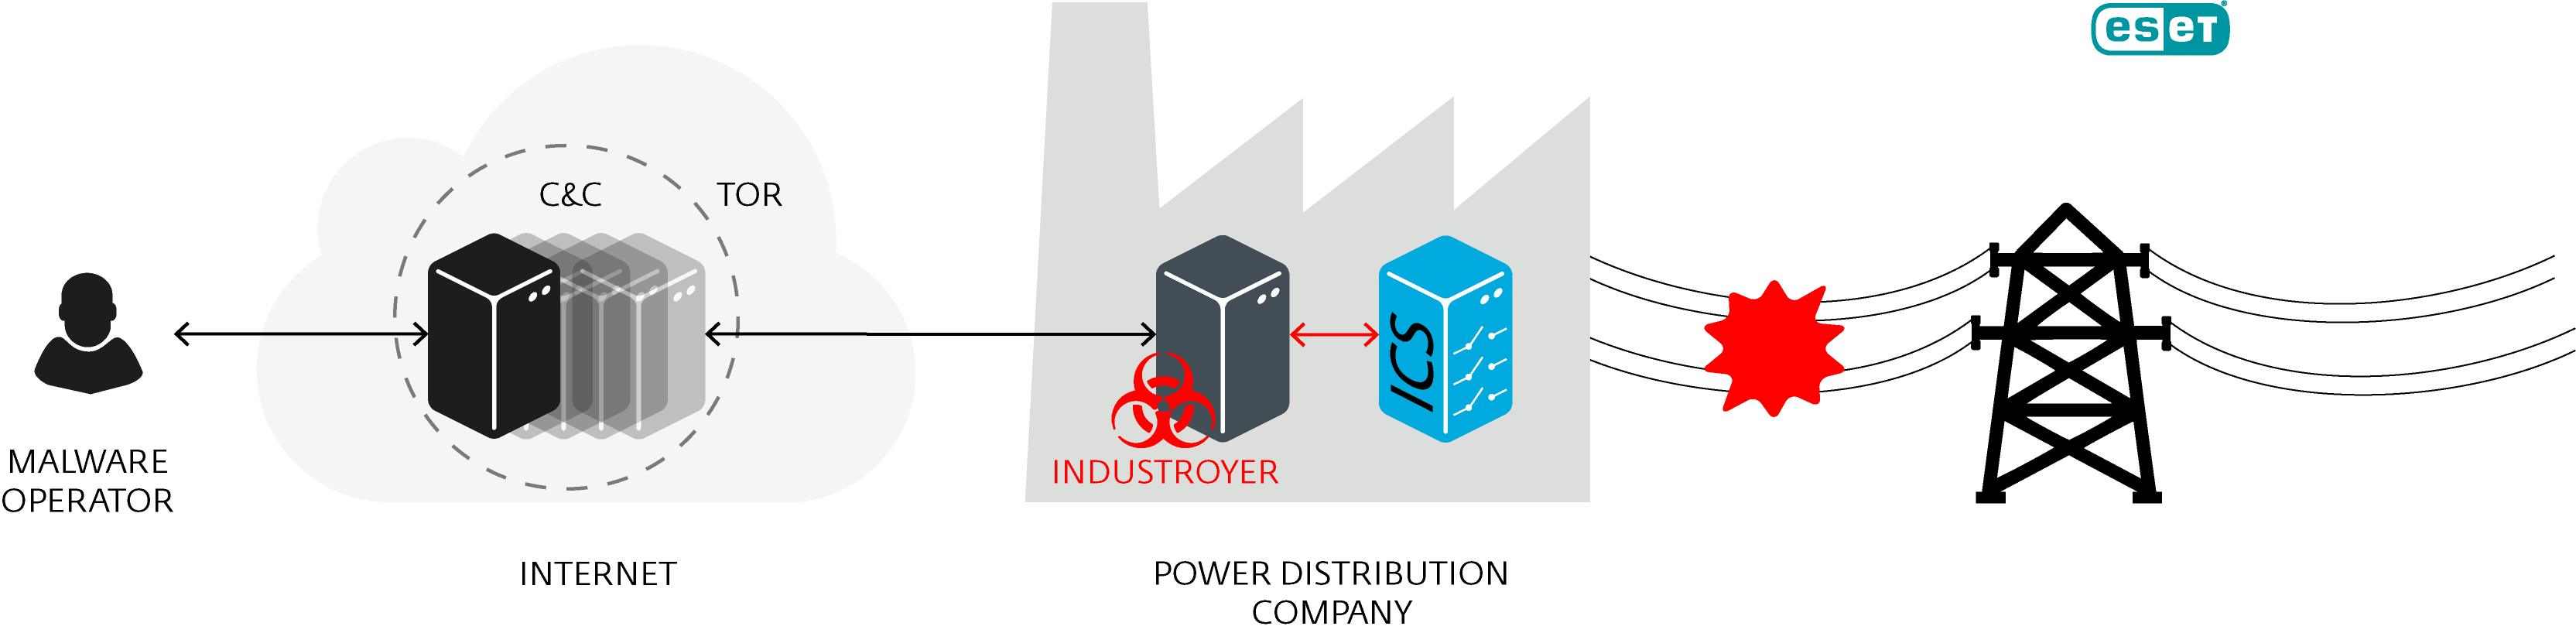 Industroyer: la mayor amenaza para los sistemas de control industrial desde Stuxnet 2